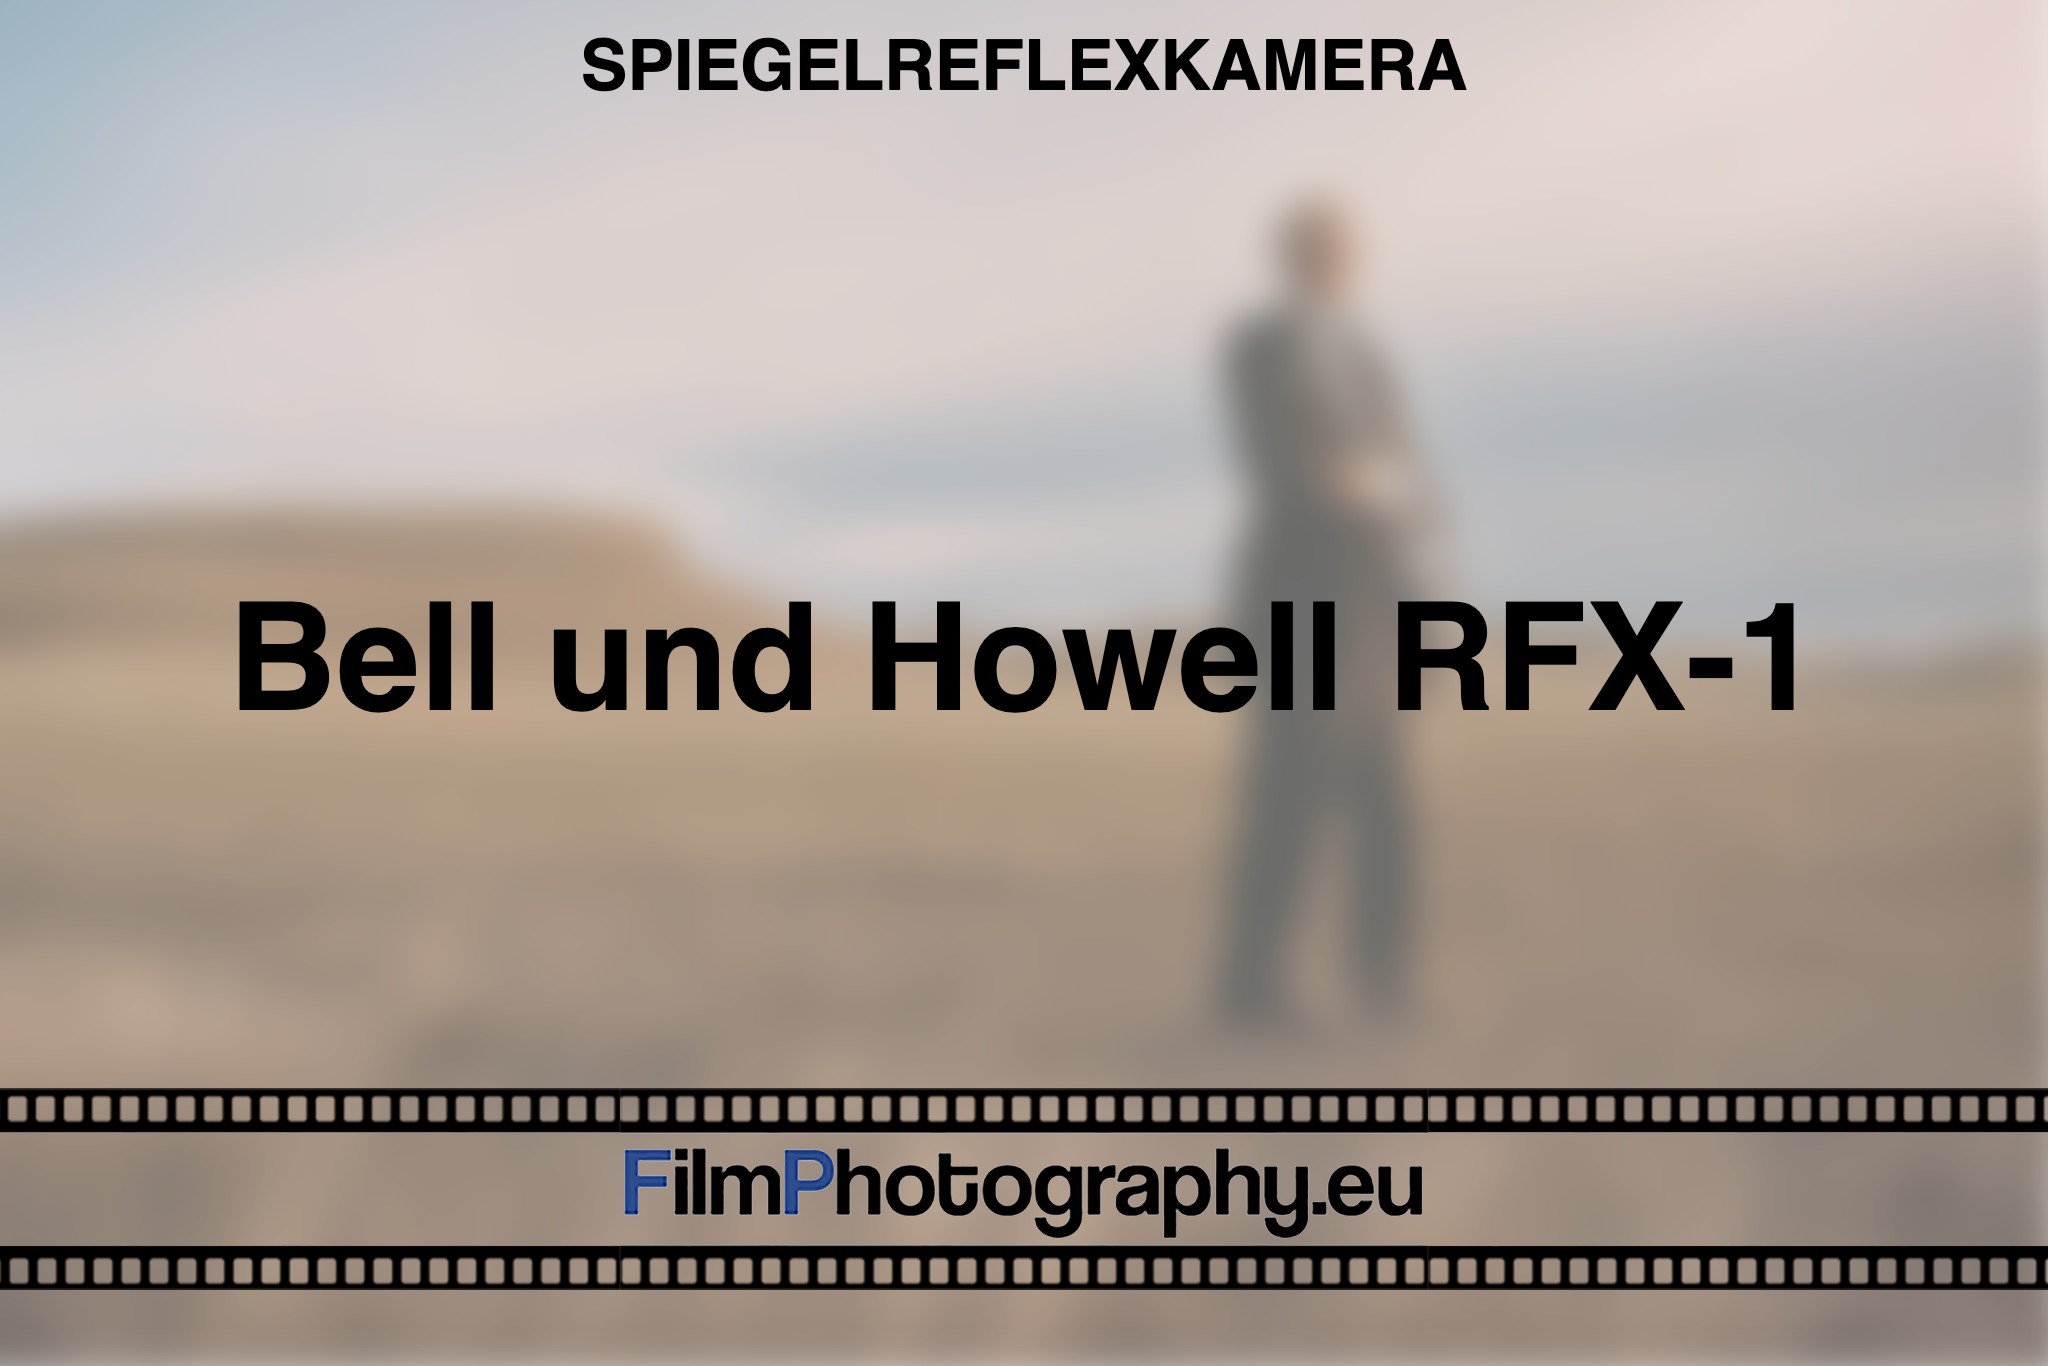 bell-howell-rfx-1-spiegelreflexkamera-photo-bnv